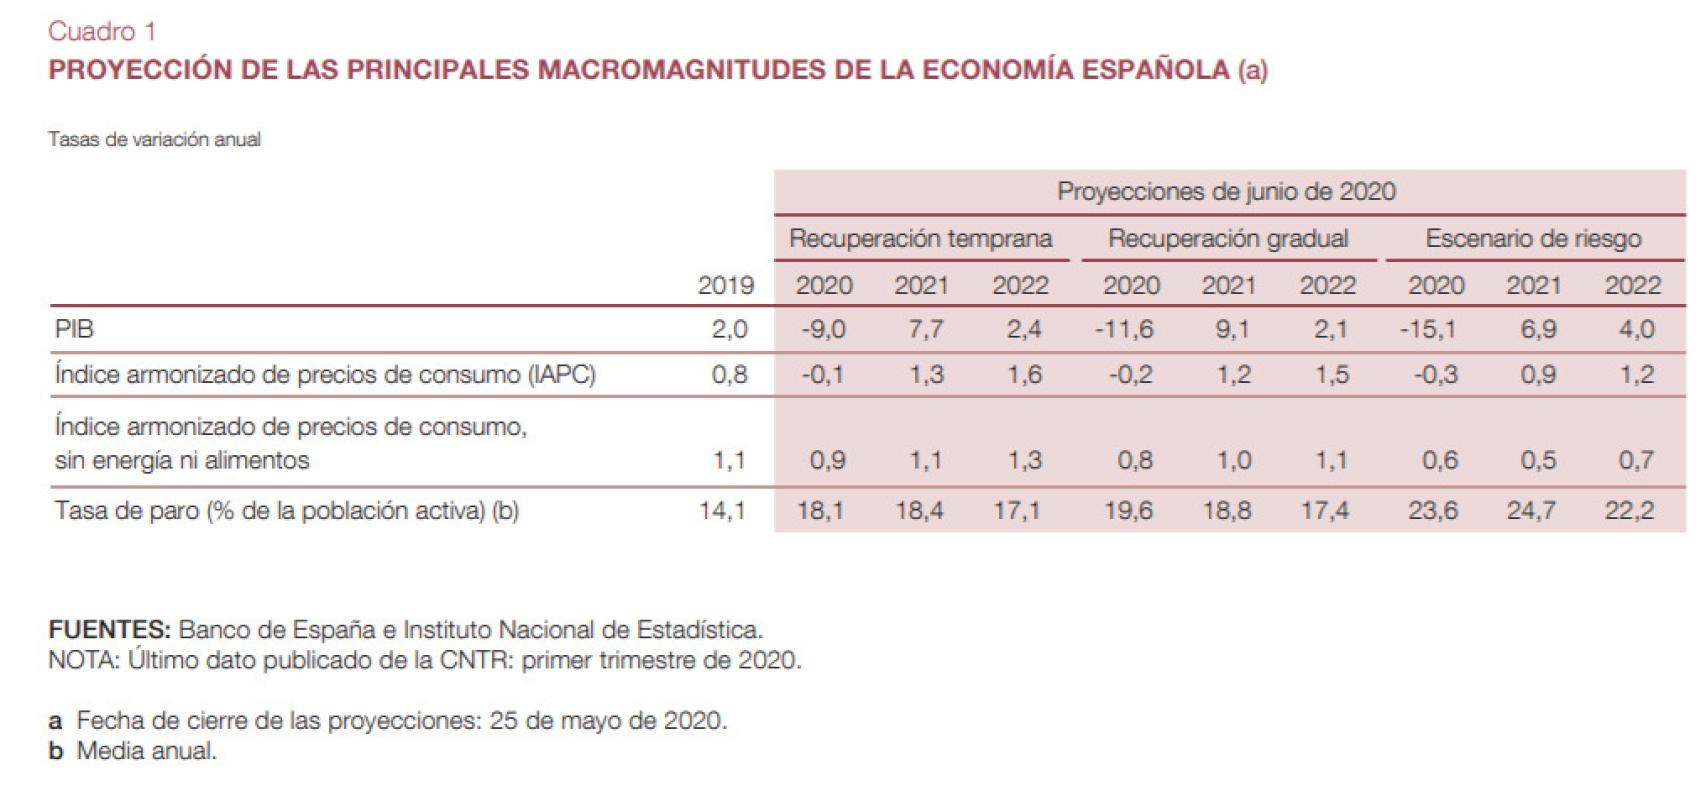 Fuente: Banco de España